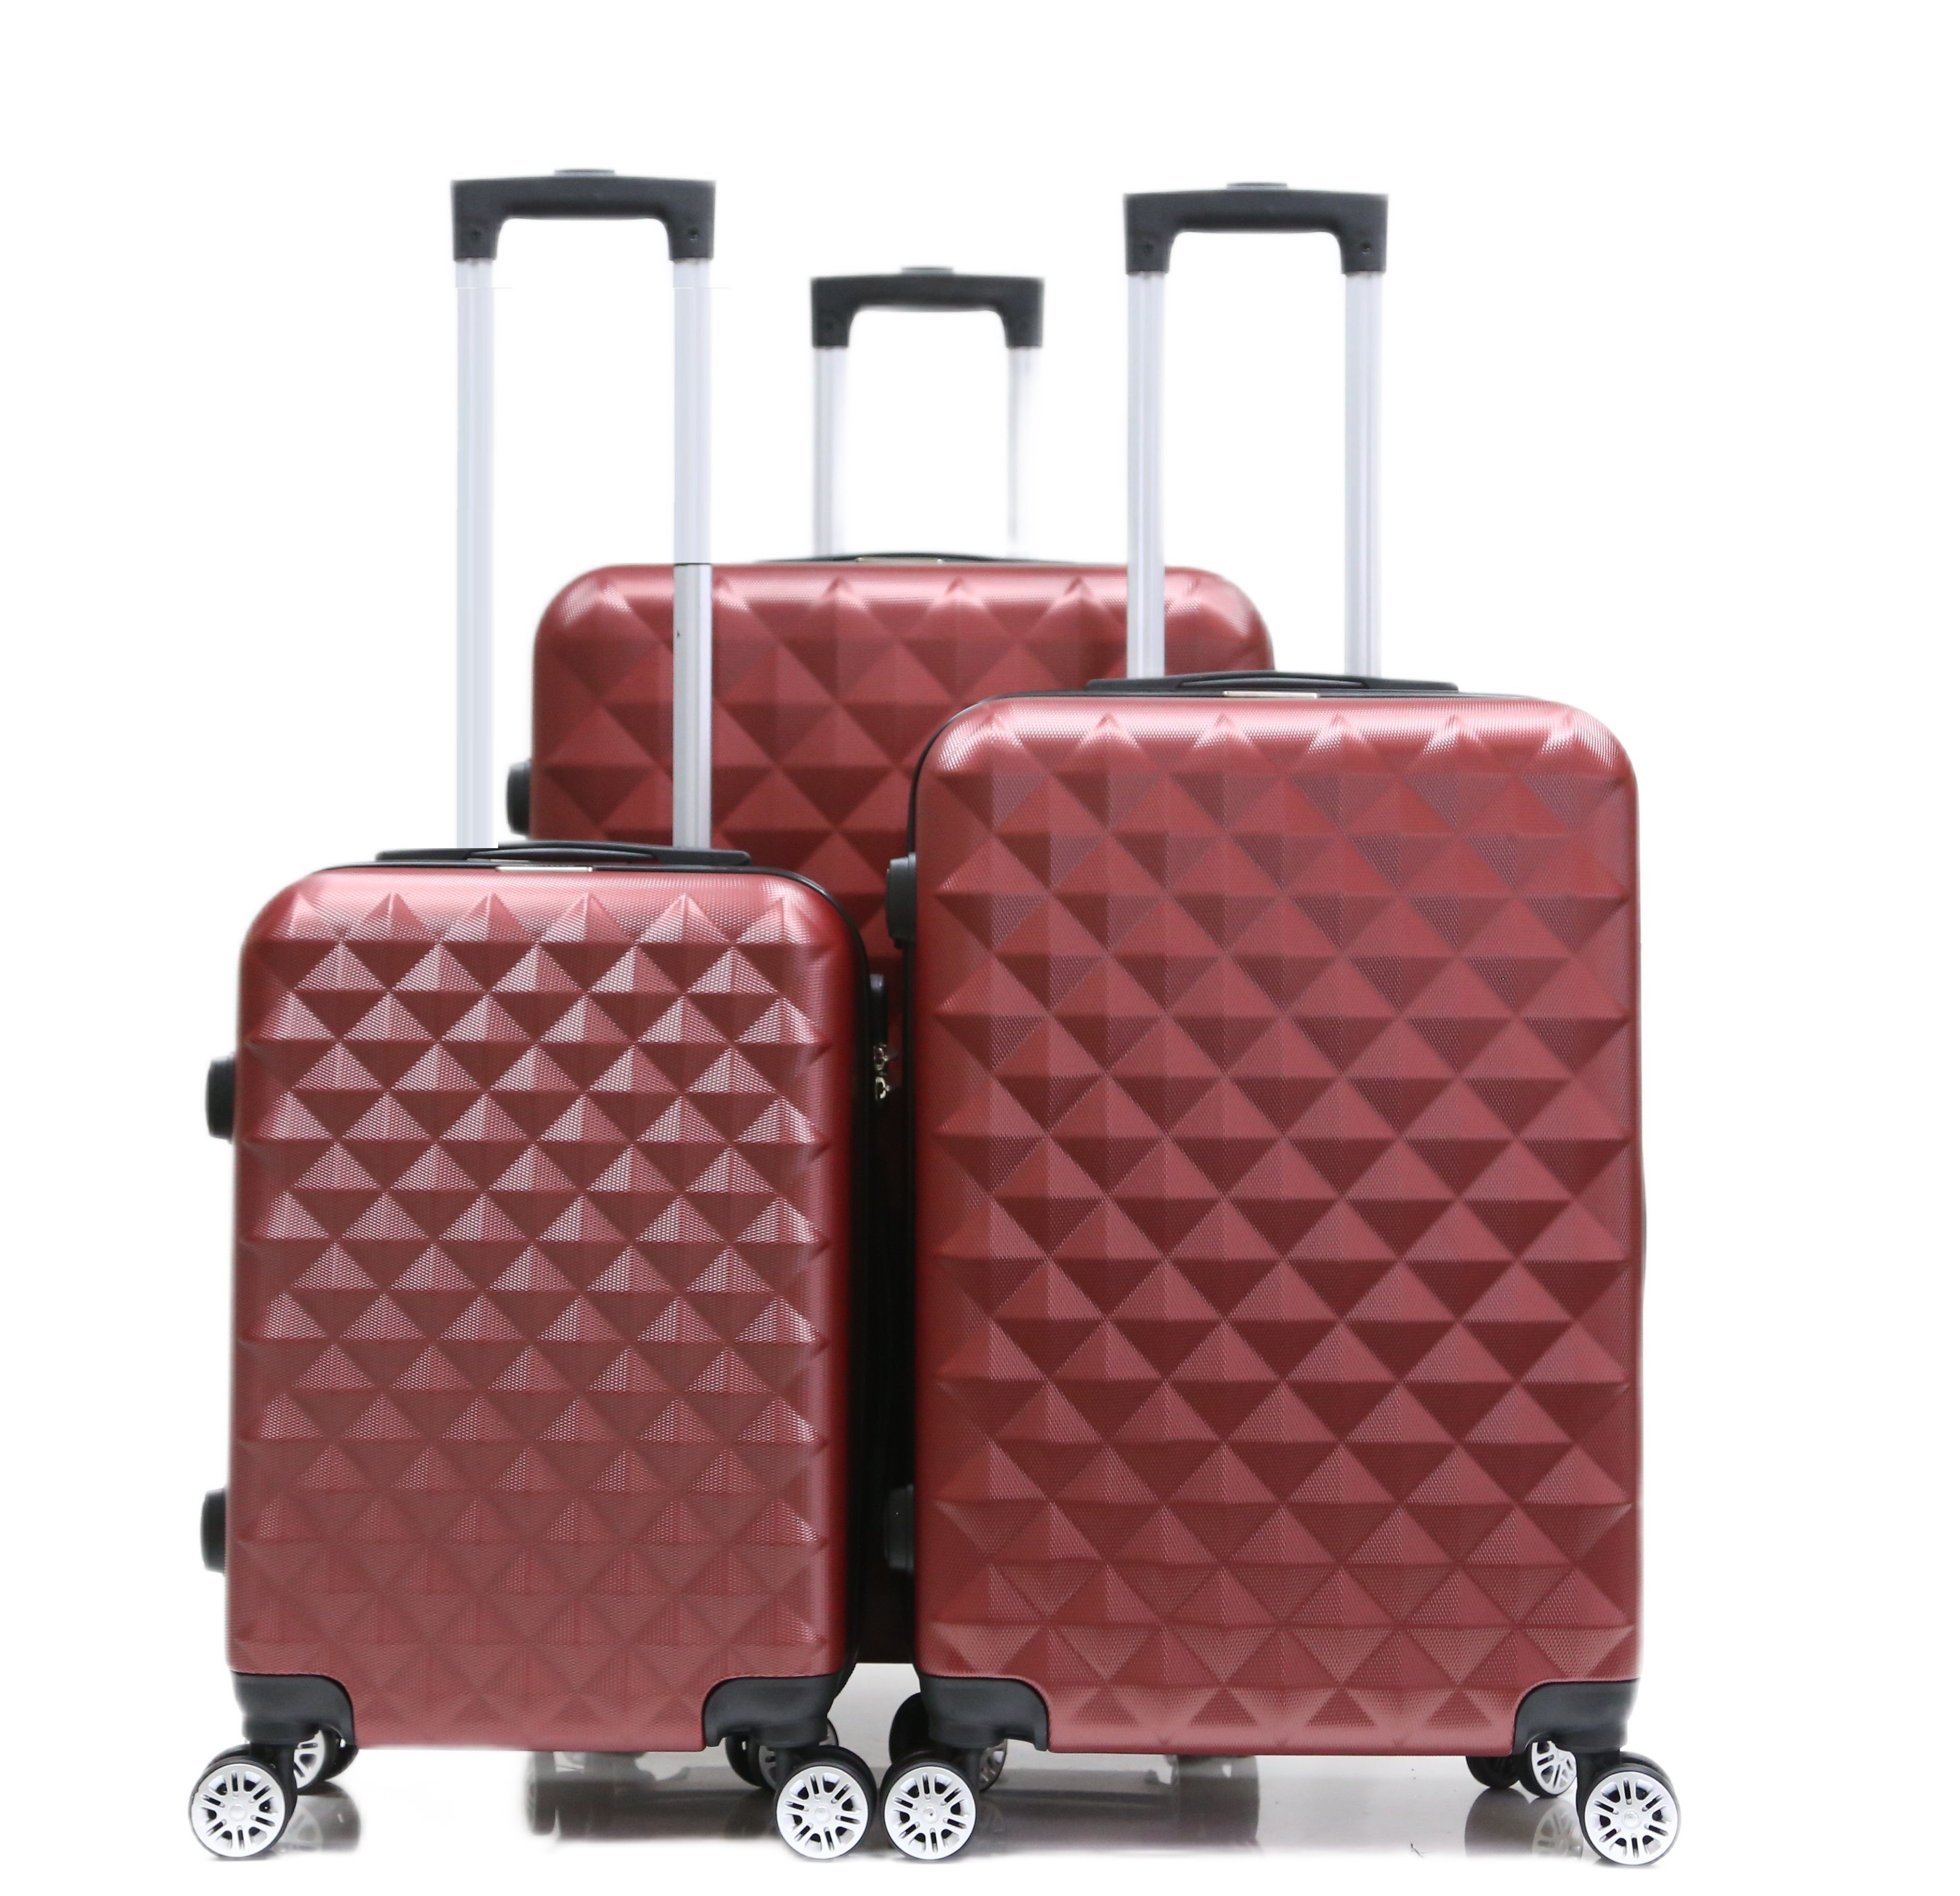 Wenn du wählst Cheffinger Koffer Koffer 3 Rollen Handgepäck Rot Trolley Hartschale Kofferset ABS-07, tlg 4 Set